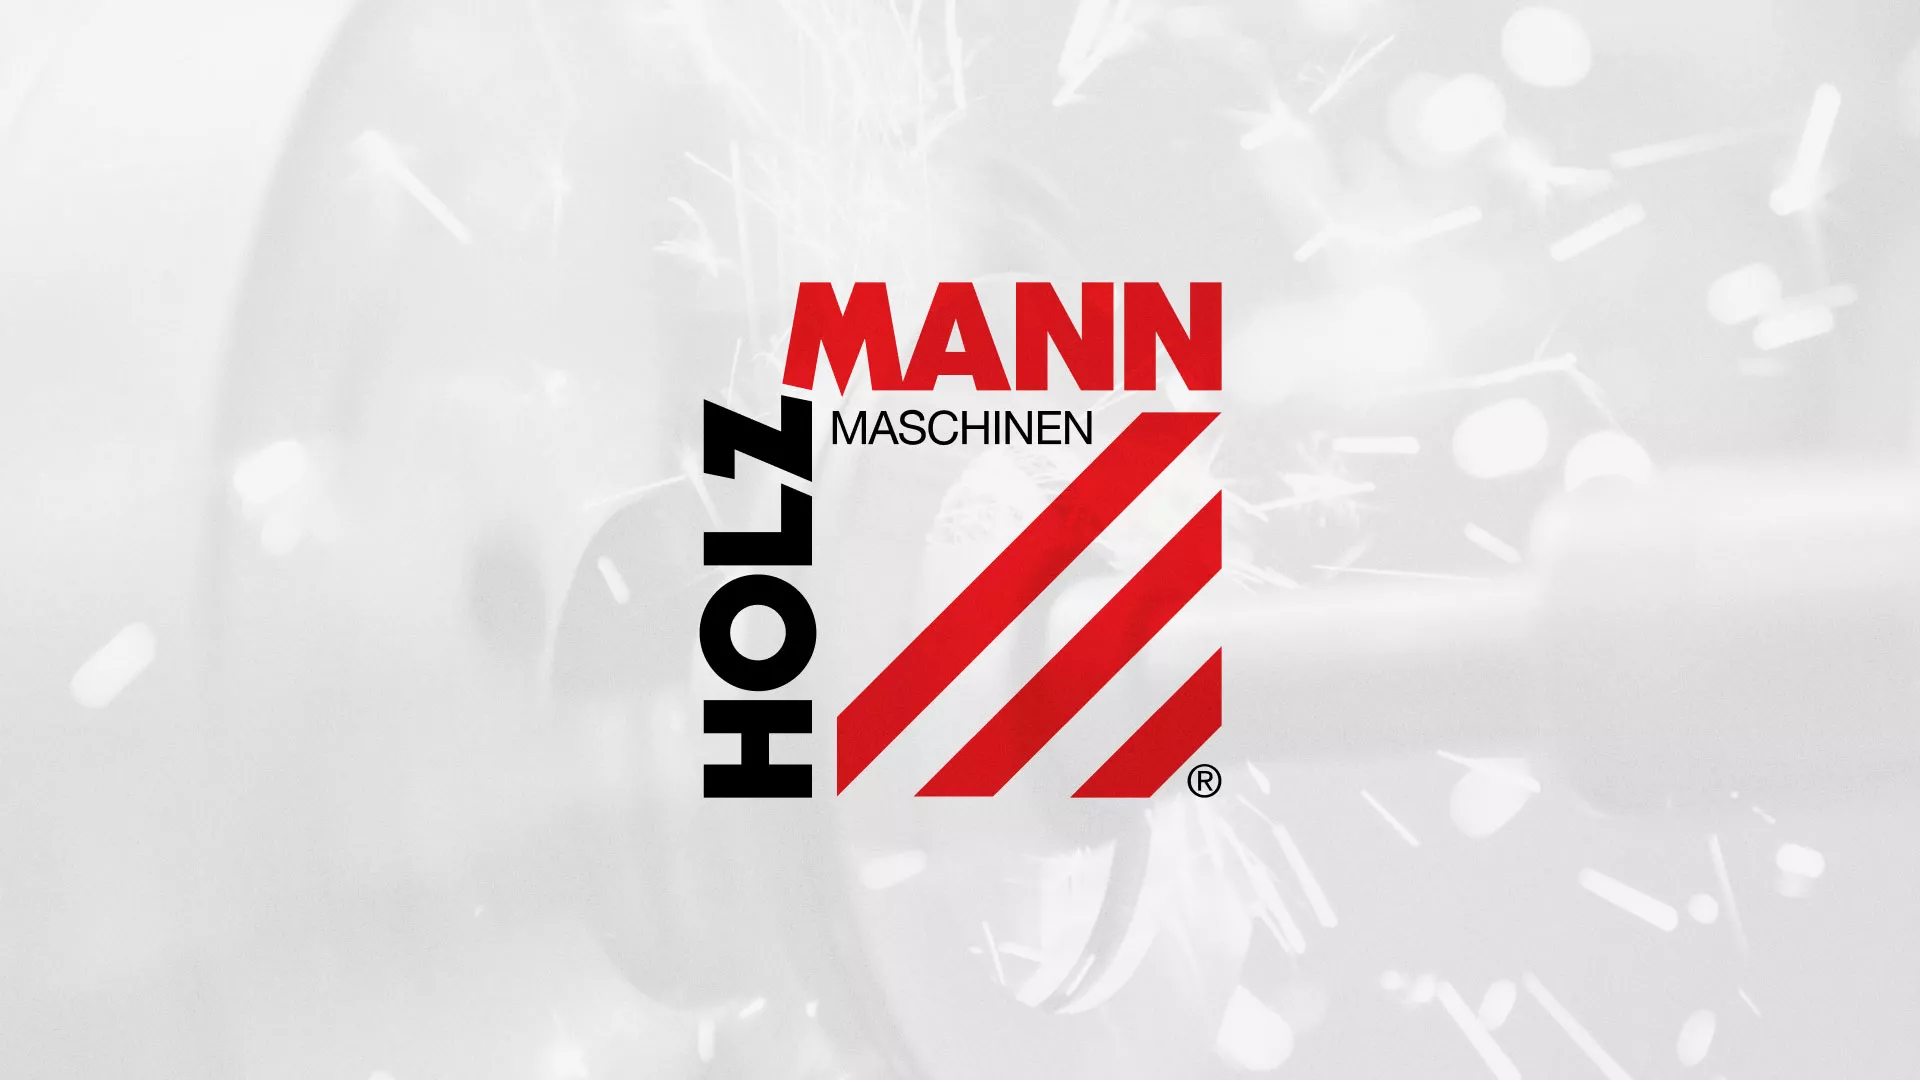 Создание сайта компании «HOLZMANN Maschinen GmbH» в Томске